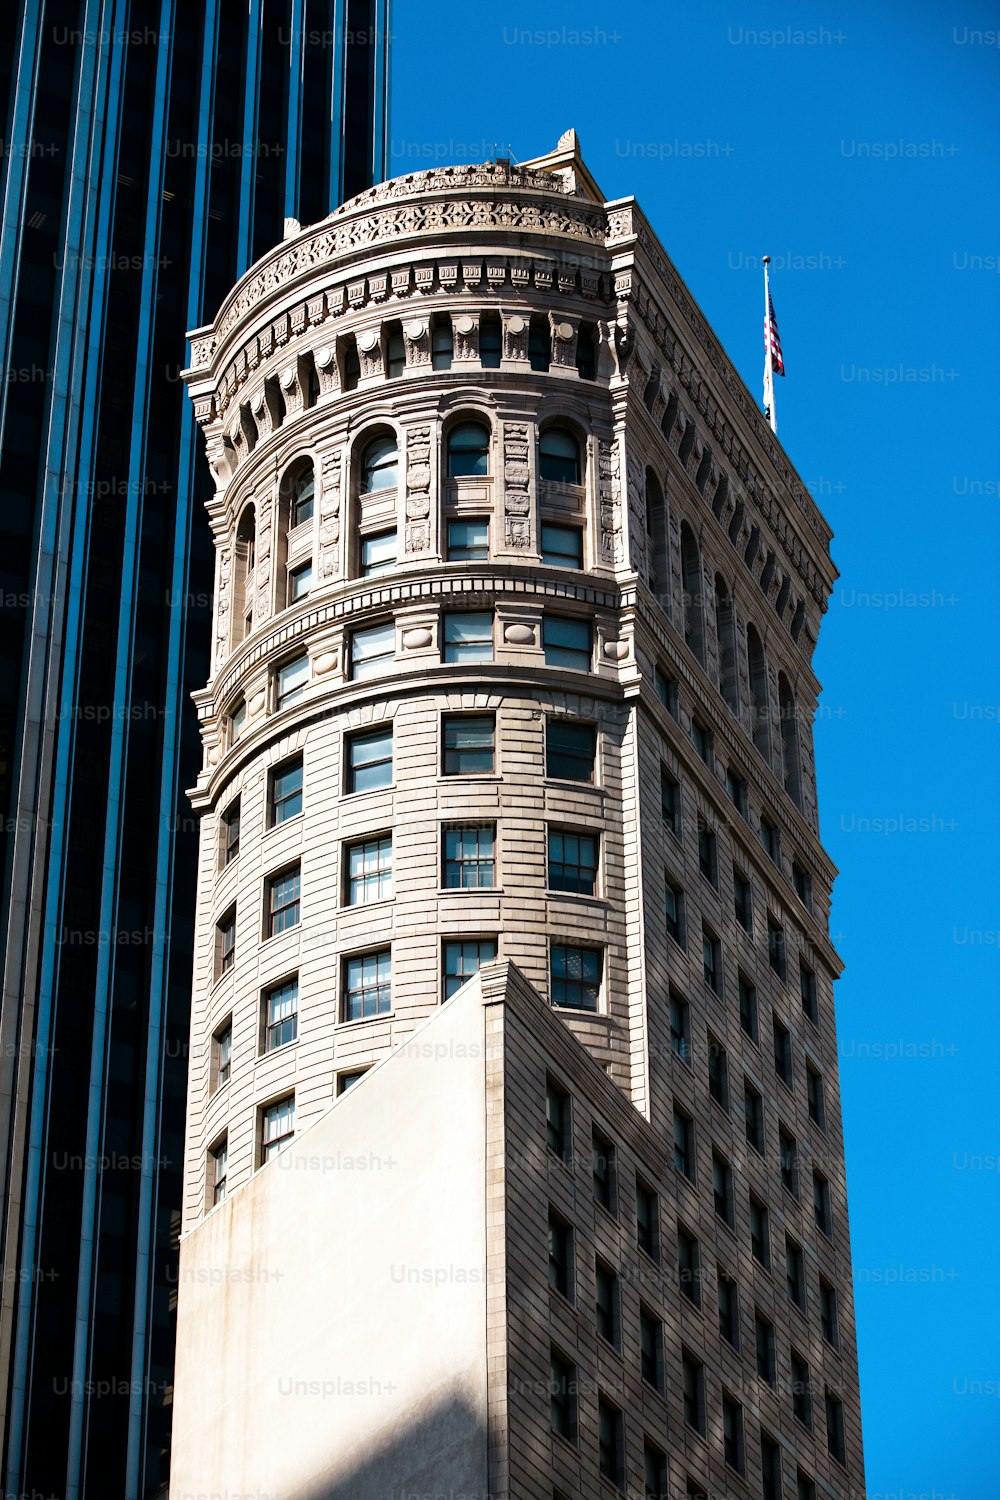 그 위에 깃발이 있는 고층 건물